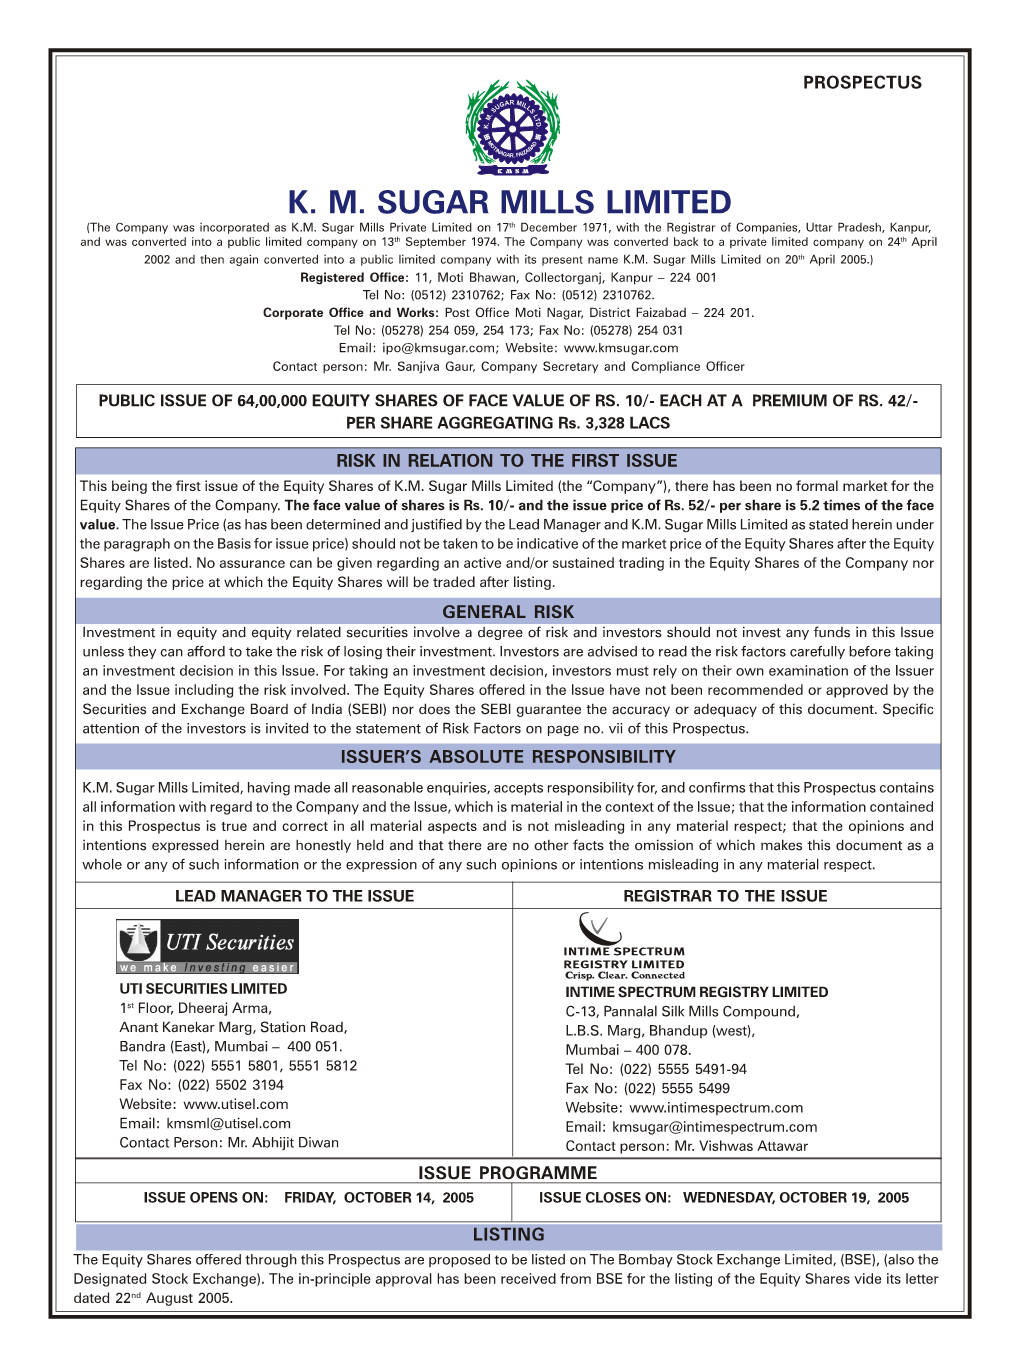 KM Sugar Mills Limited